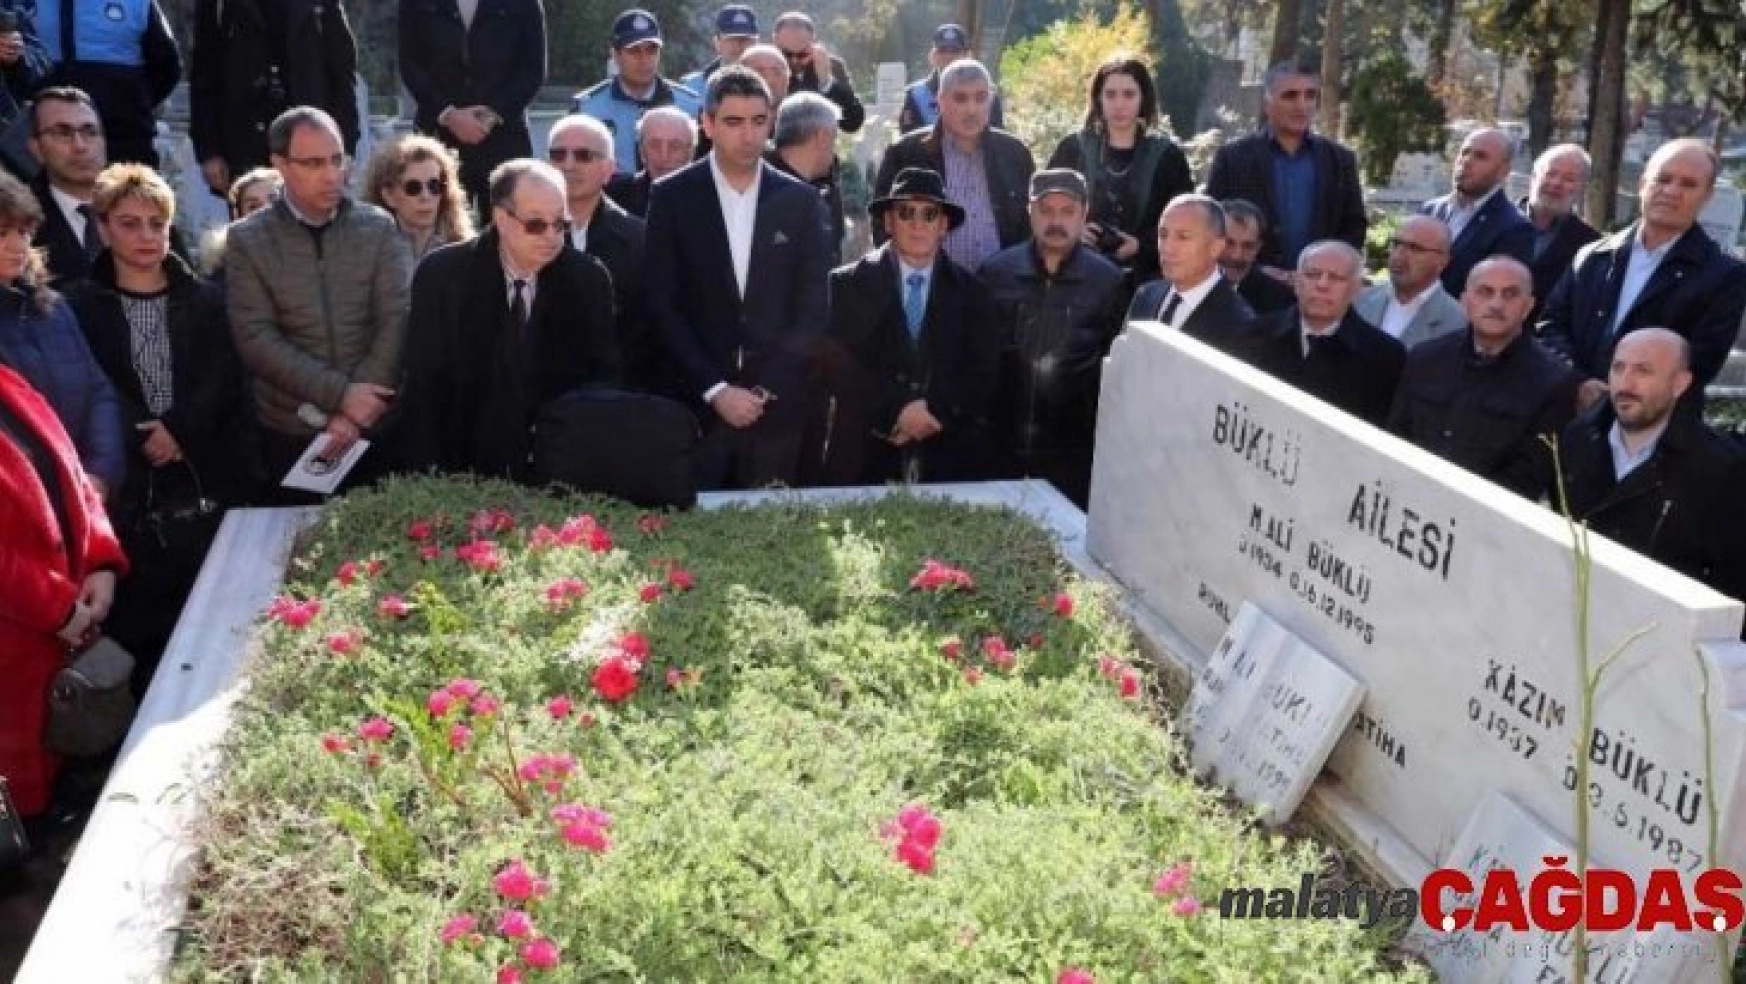 Kartal Belediyesi eski başkanlarından Mehmet Ali Büklü, kabri başında anıldı